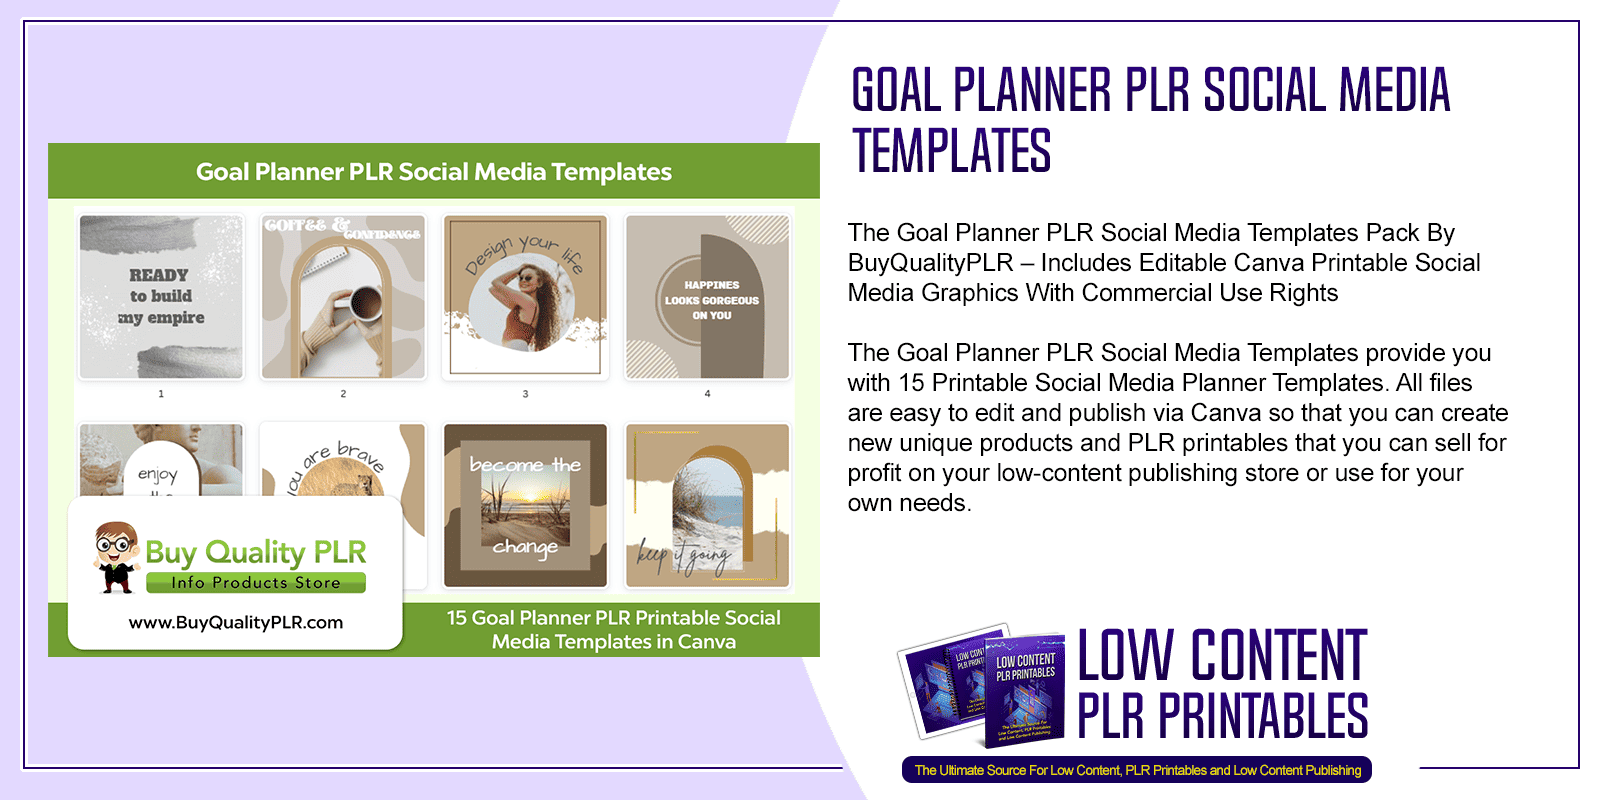 Goal Planner PLR Social Media Templates